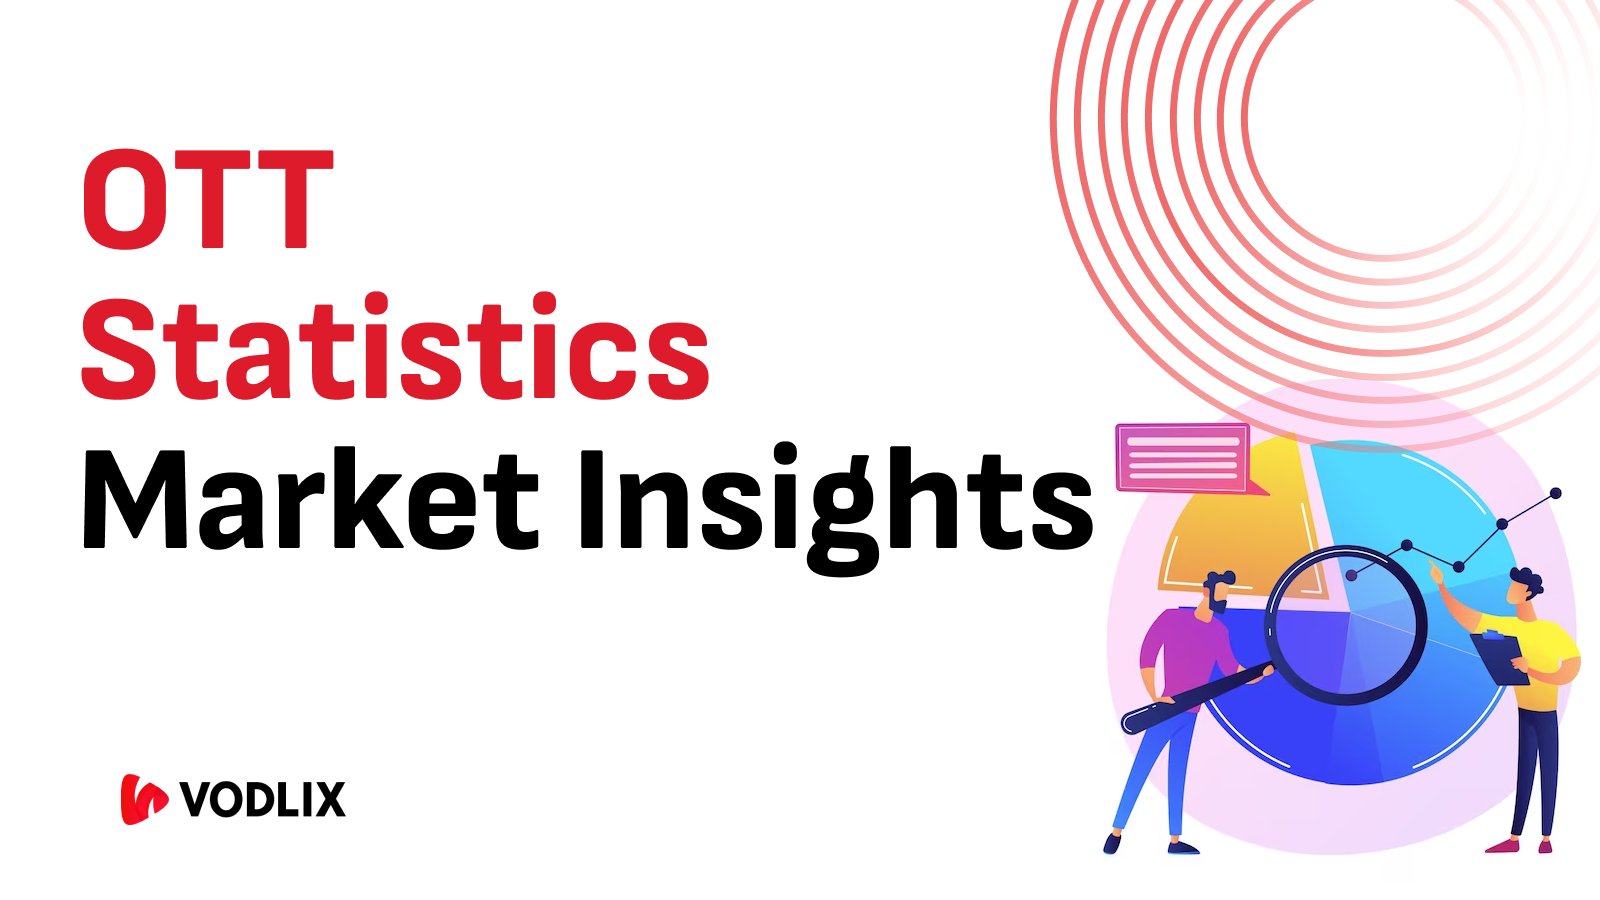 OTT Statistics & Market Insights